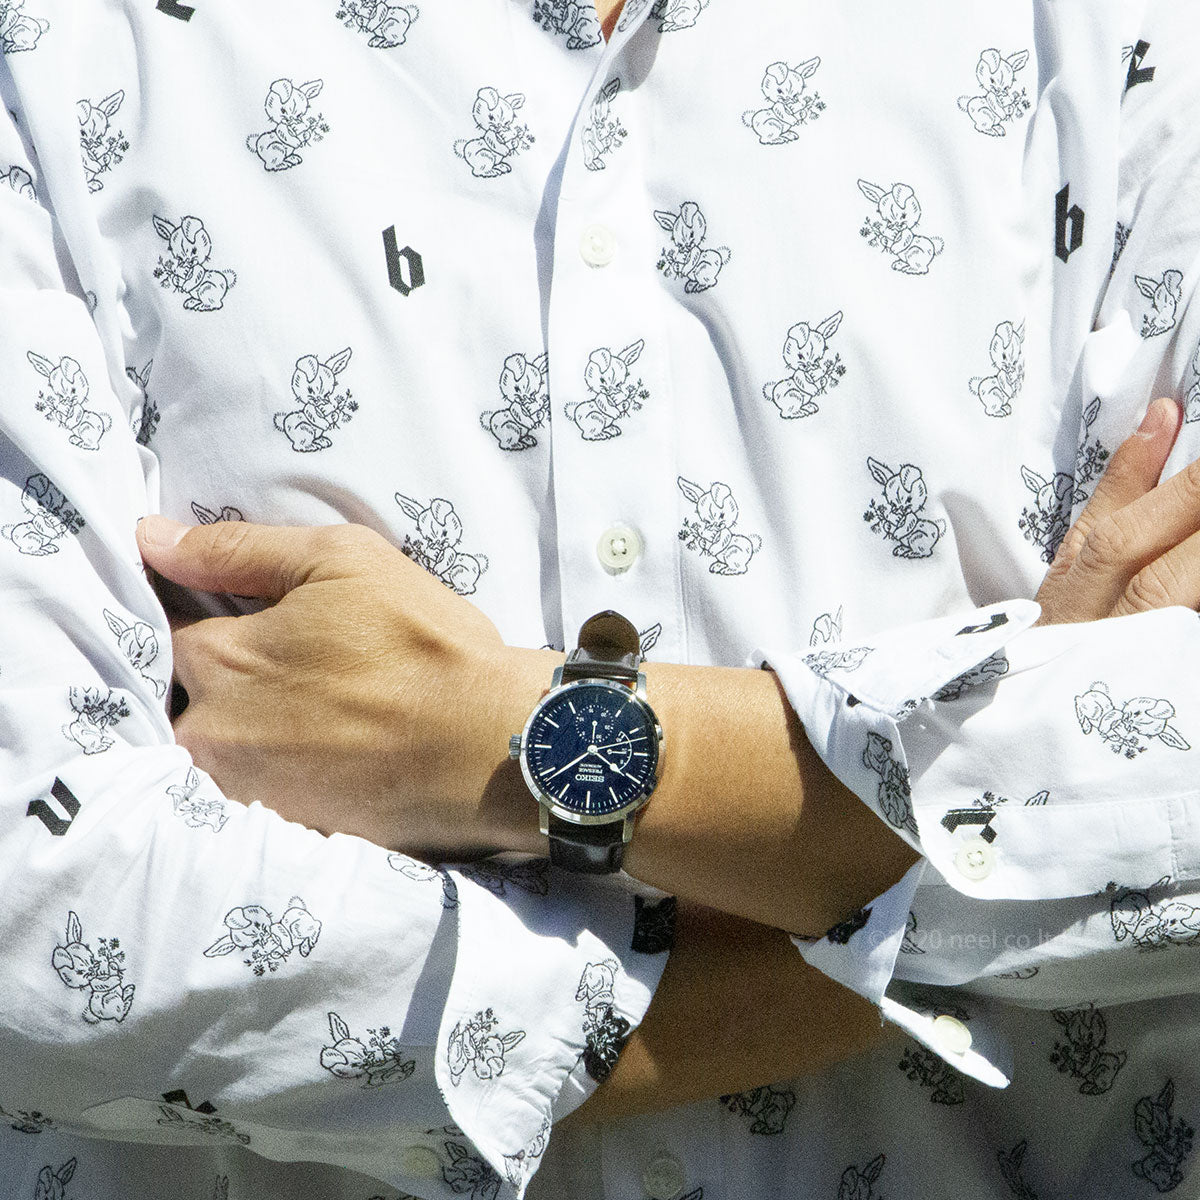 セイコー SEIKO 腕時計 メンズ SARW057 セイコー メカニカル プレザージュ プレステージライン 琺瑯ダイヤル PRESTIGE LINE 自動巻き（6R27/手巻き付） ネイビーxブラウン アナログ表示